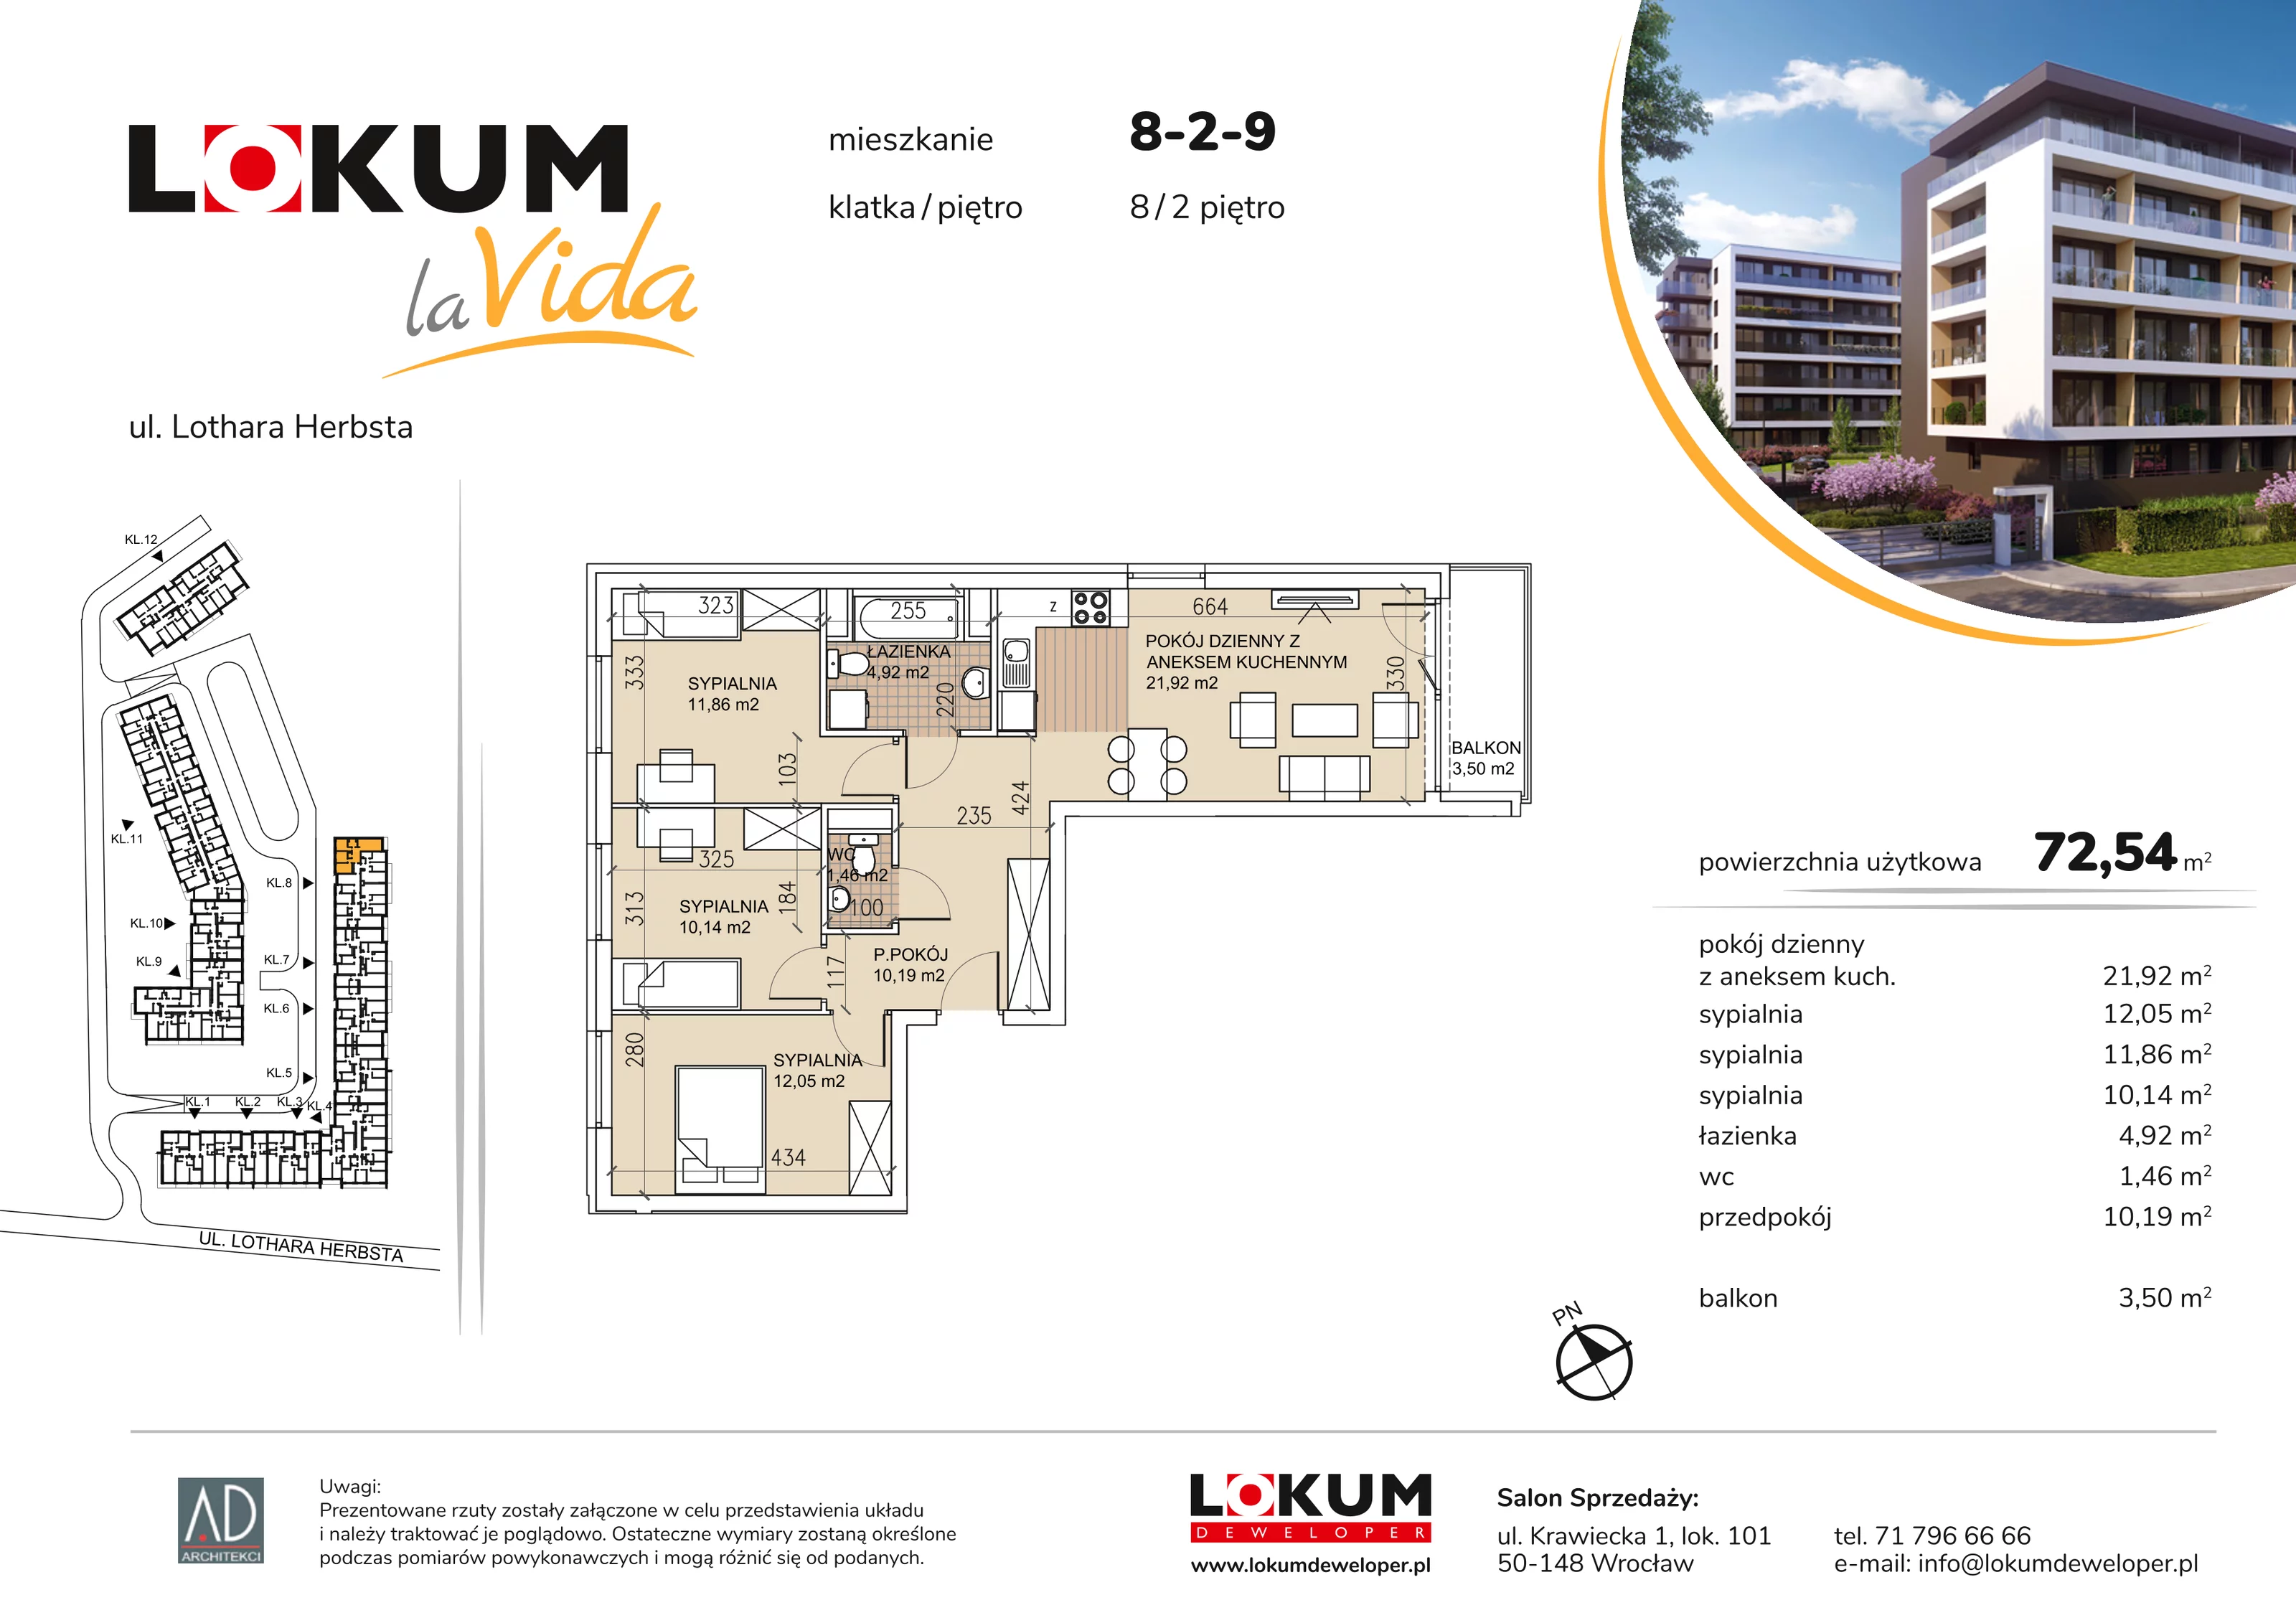 Mieszkanie 72,54 m², piętro 2, oferta nr 8-2-9, Lokum la Vida, Wrocław, Sołtysowice, ul. Lothara Herbsta